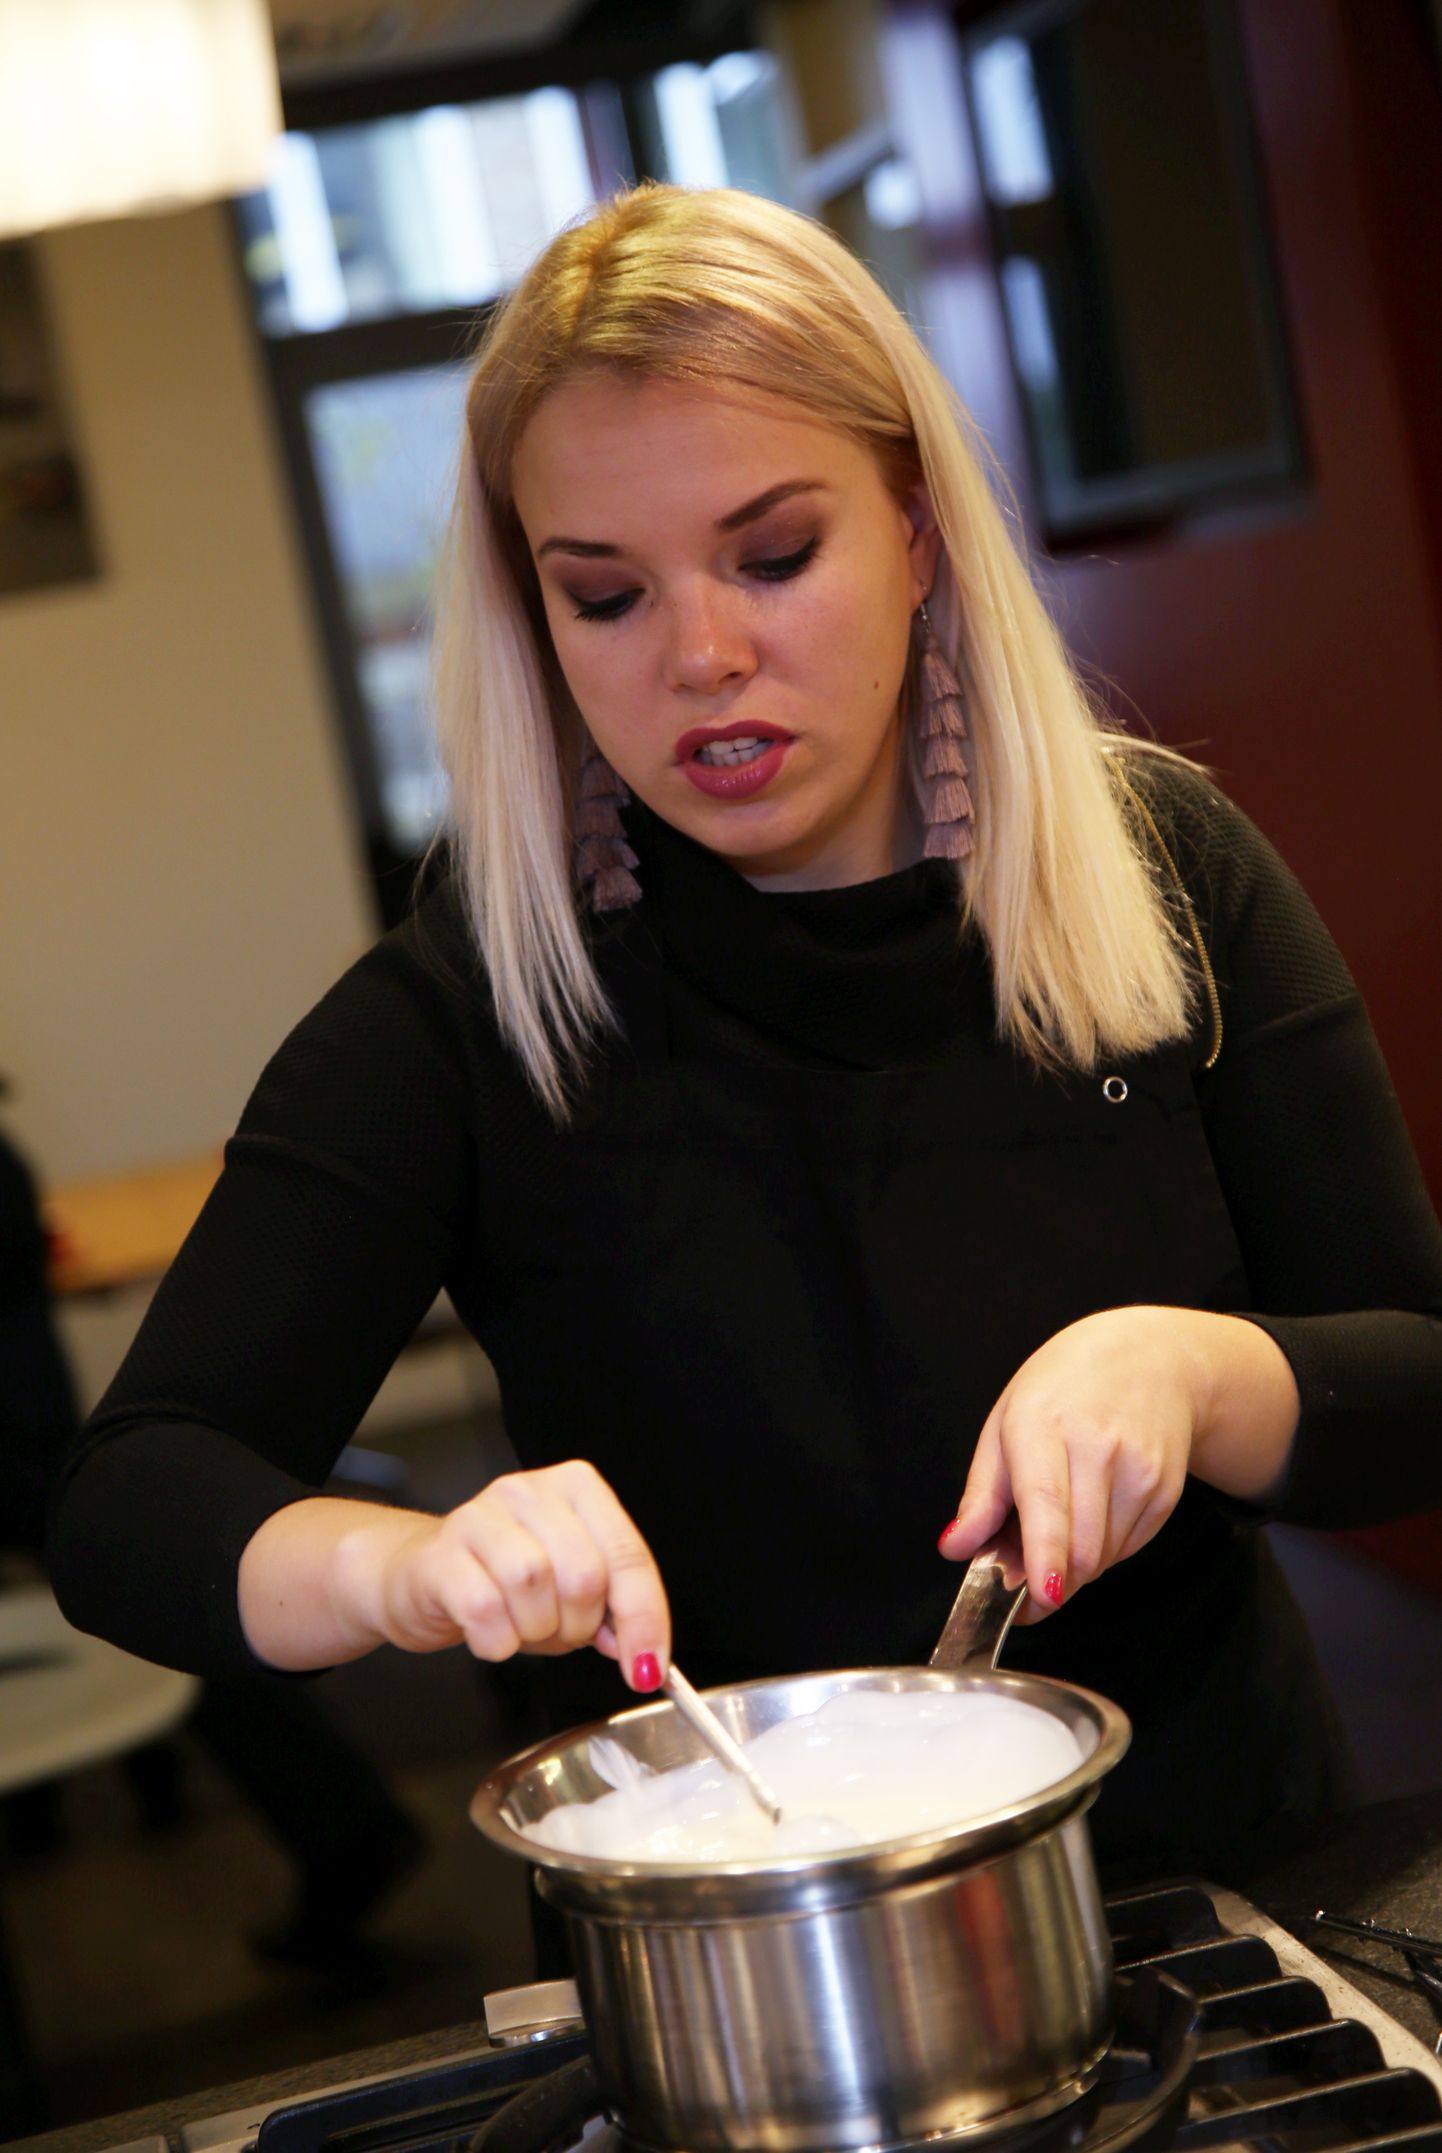 Projekta vēstnese, dziedātāja Ieva Sutugova piedalās projekta "Apsveikums Latvijai" kūku cepšanas meistarklasē salonā "Miele". Ilustratīvs attēls.